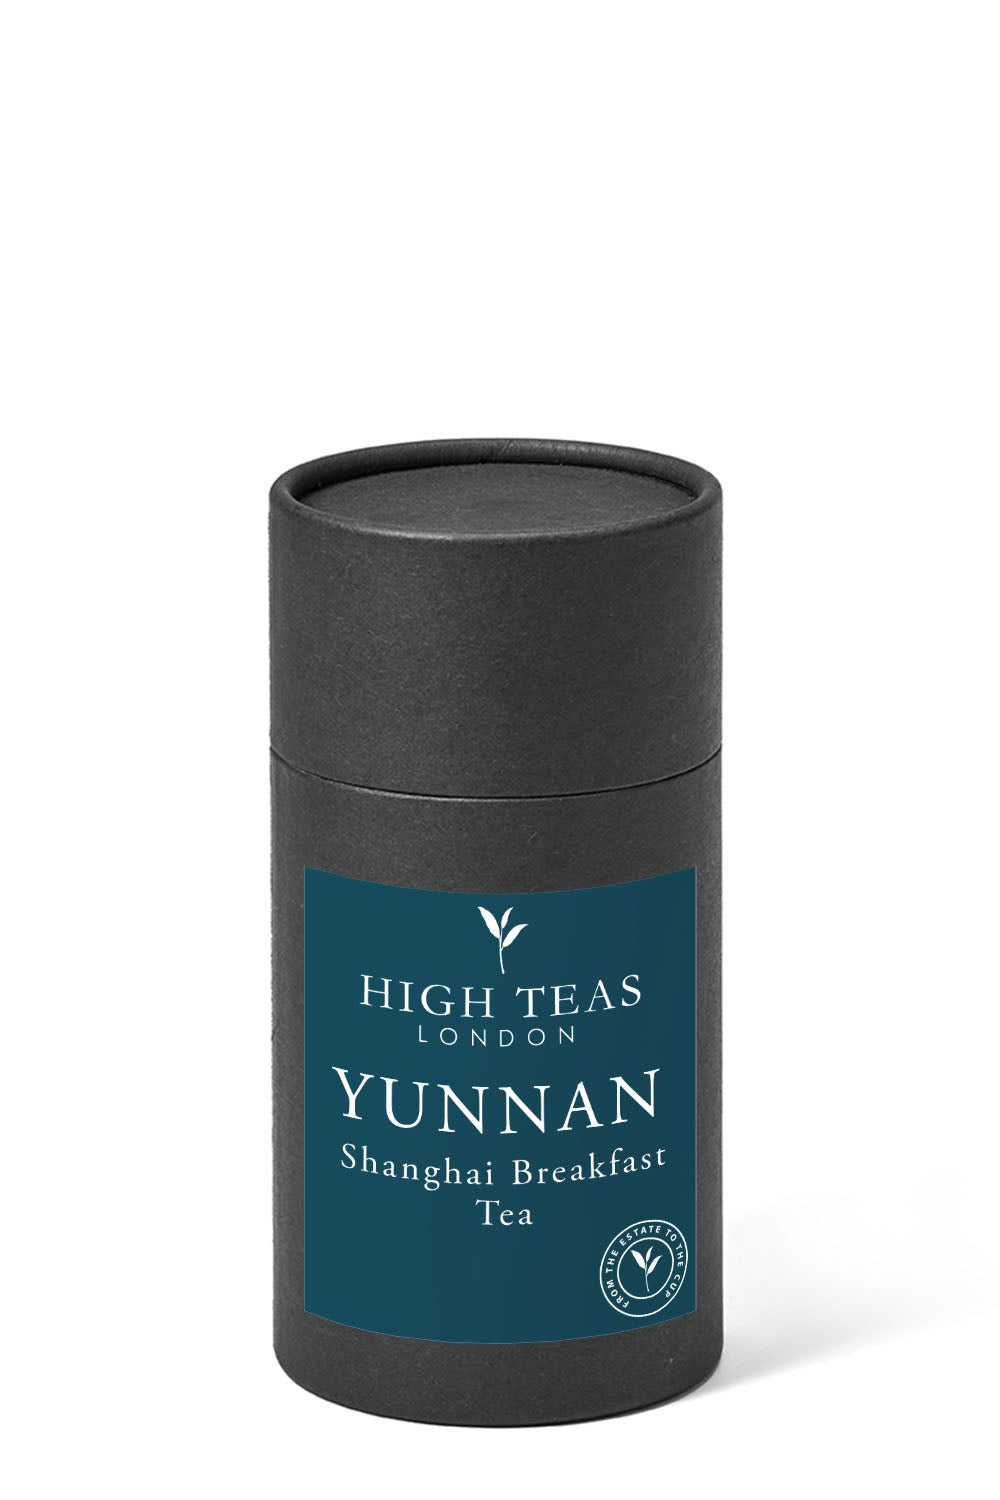 Yunnan Imperial "Gold Tip" aka Shanghai Breakfast Tea-60g gift-Loose Leaf Tea-High Teas